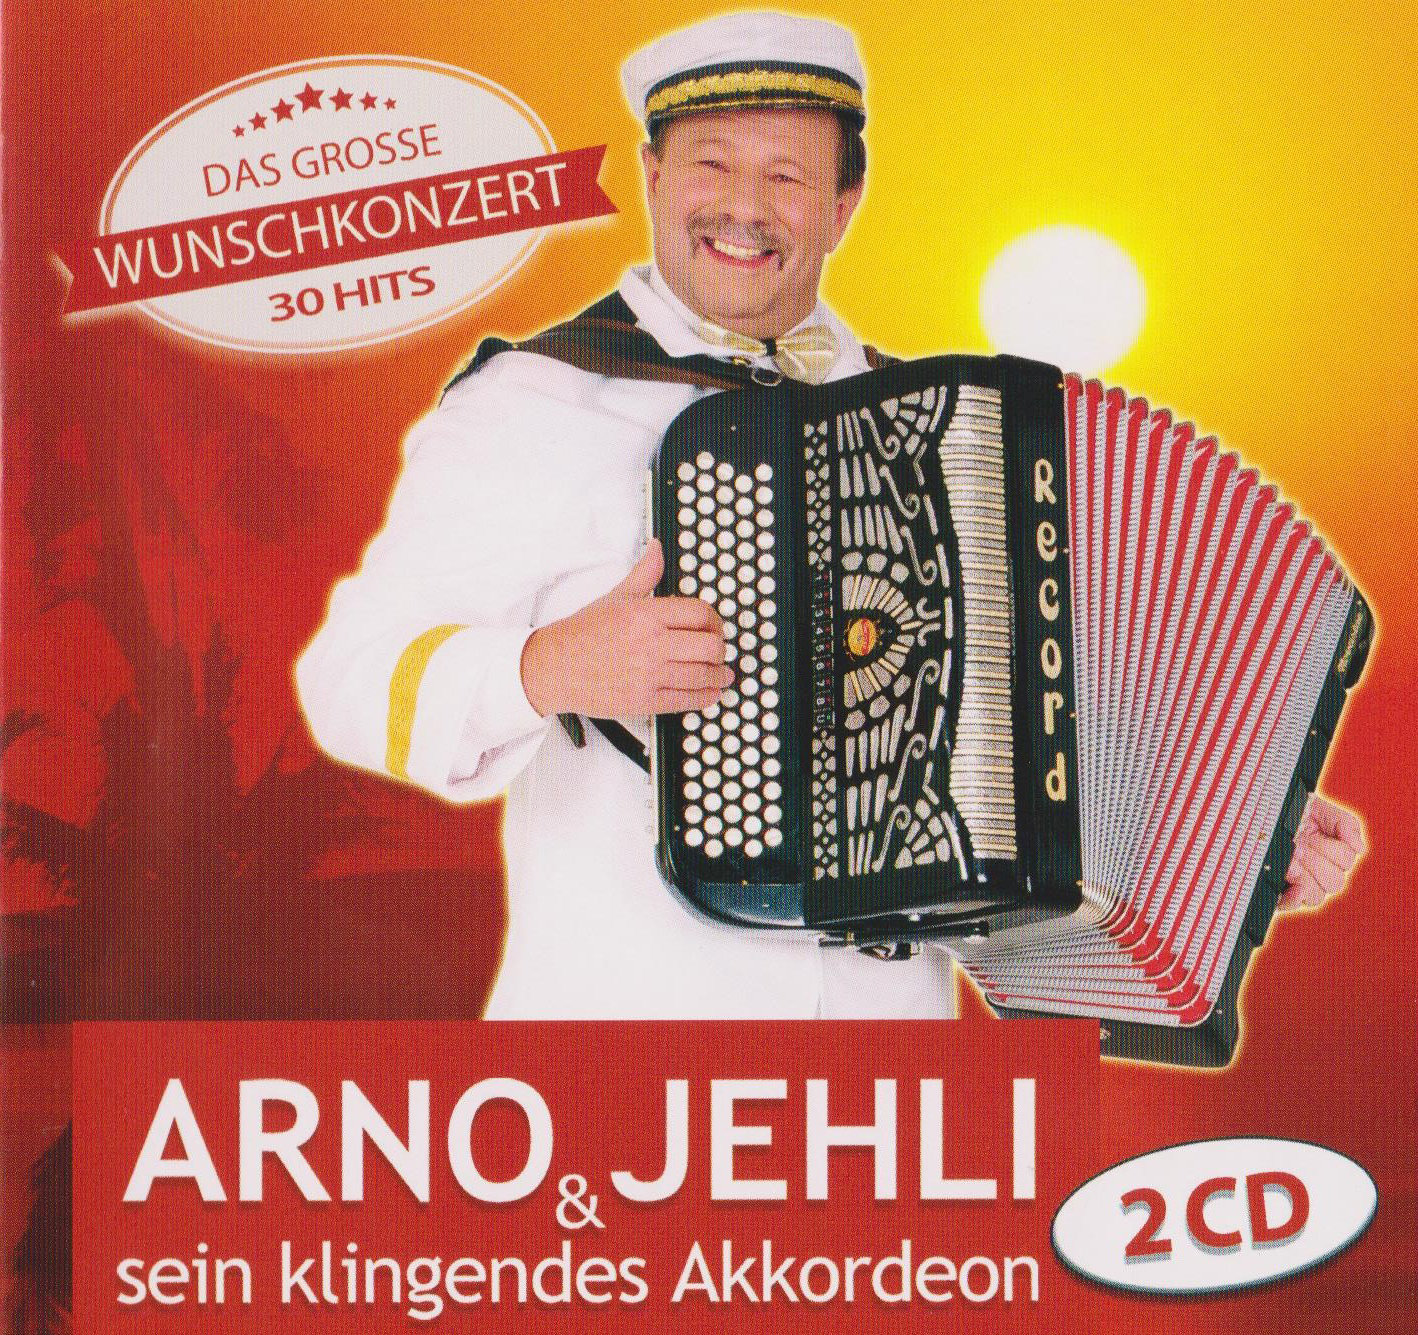 Arno & Jehli sein klingendes Akkordeon, 2 CD